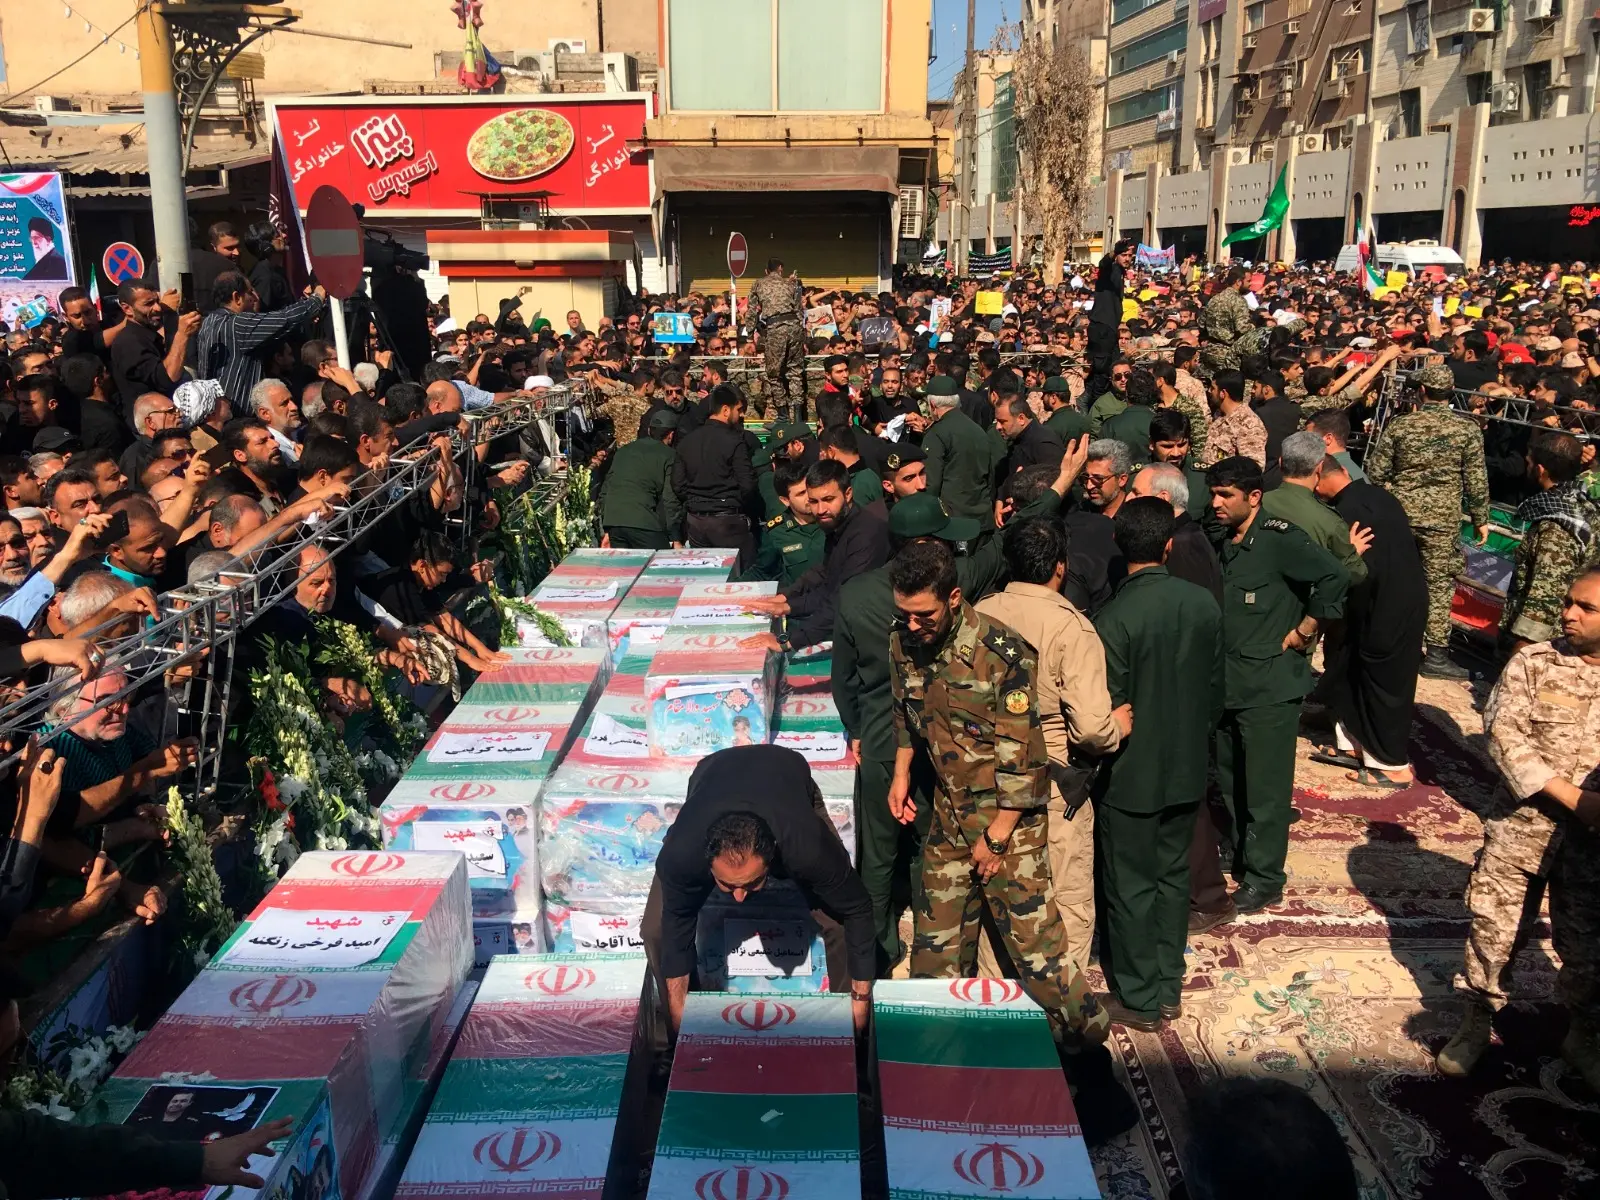 ארונות קבורה של הרוגי הפיגוע מוצגים בעיר אווהאז, איראן, 24 בספטמבר 2018